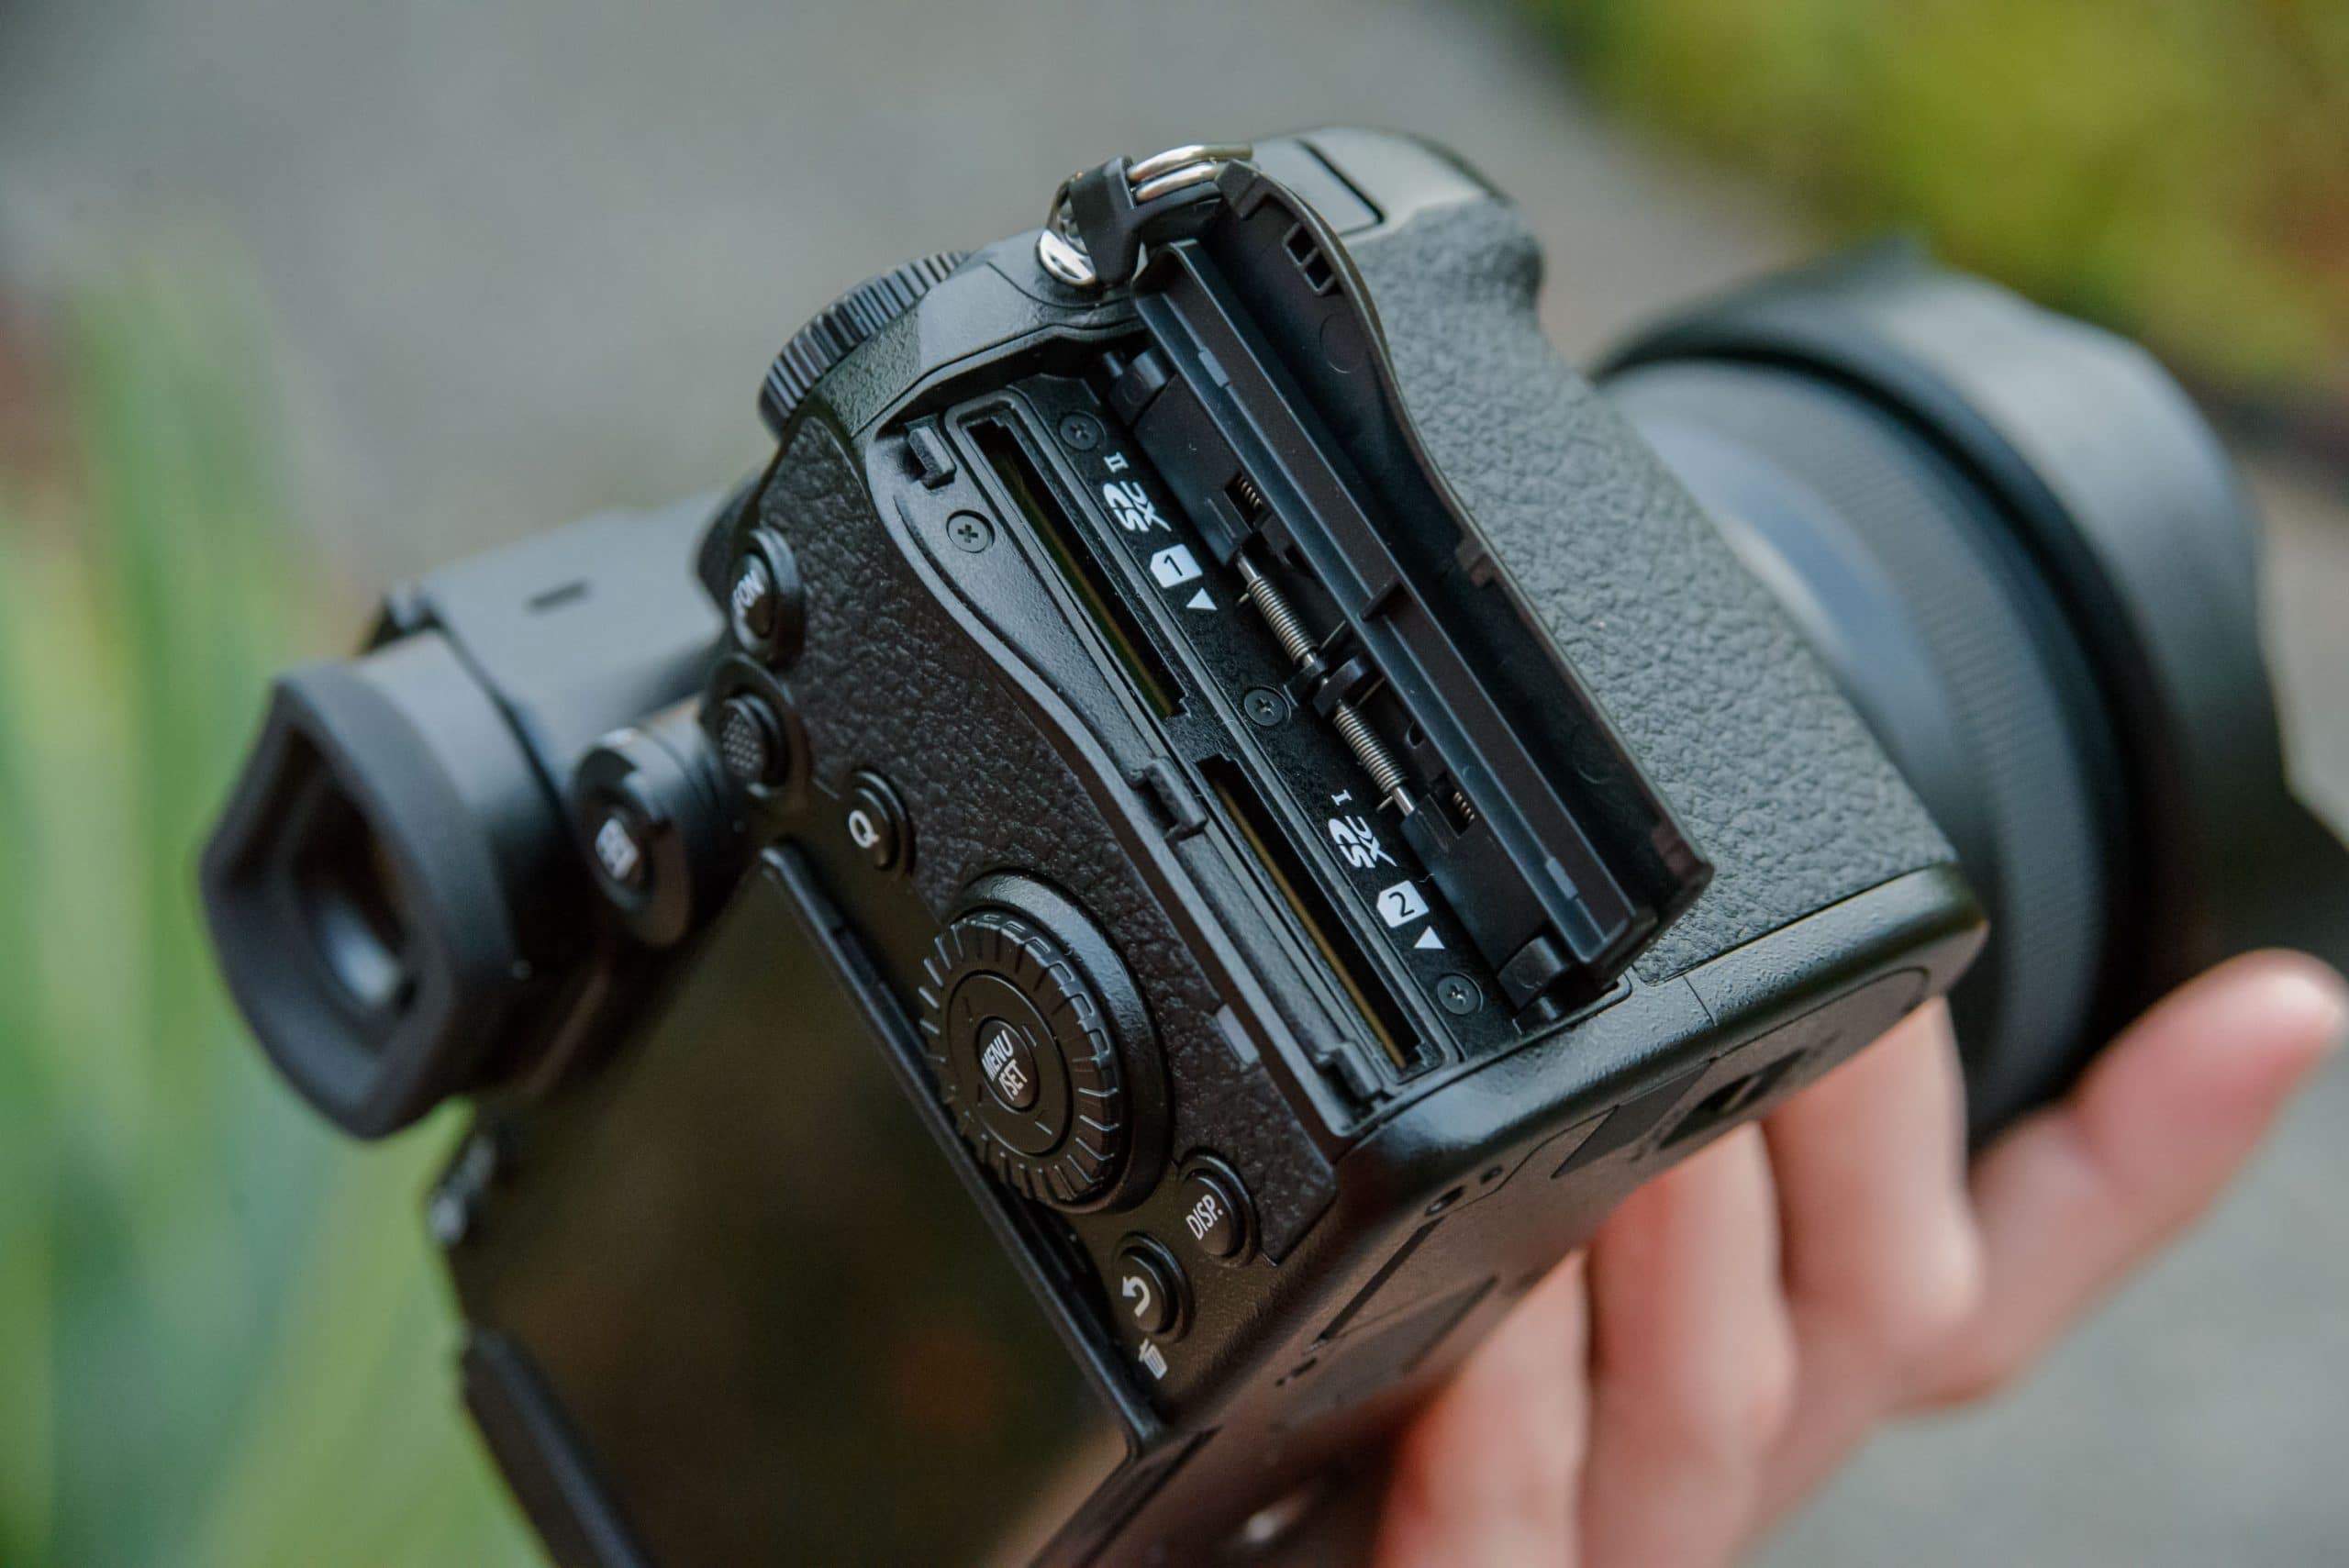 Panasonic ra mắt máy ảnh Lumix S5: Máy ảnh full frame gọn nhẹ cho cả chụp ảnh và quay video